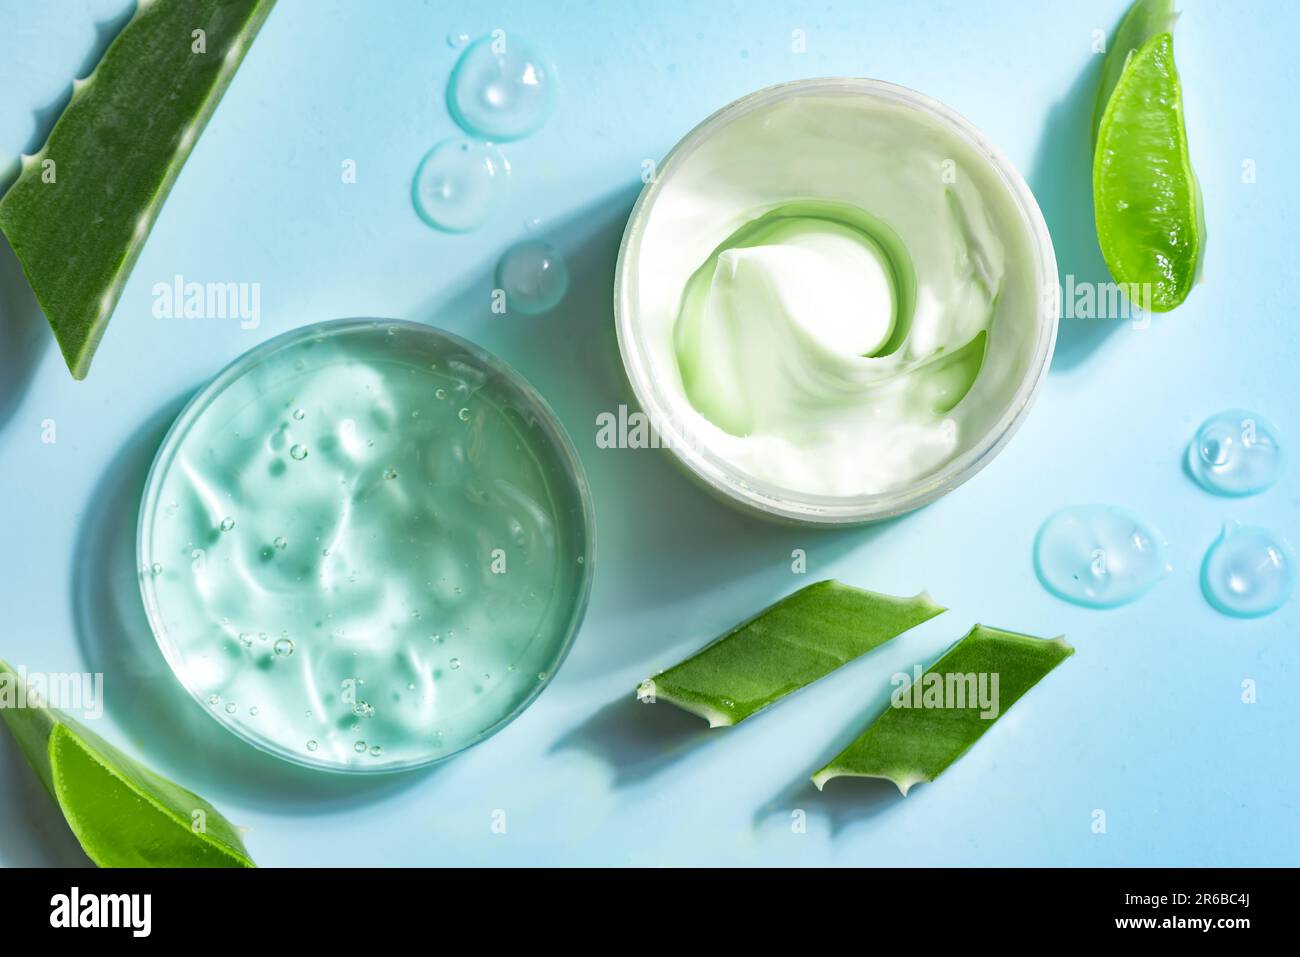 Feuilles de plantes d'aloe vera et gel cosmétique pour les soins de la peau sur fond bleu, vue de dessus. Gel cosmétique naturel biologique à base d'aloe vera dans un plat de pétri. Banque D'Images